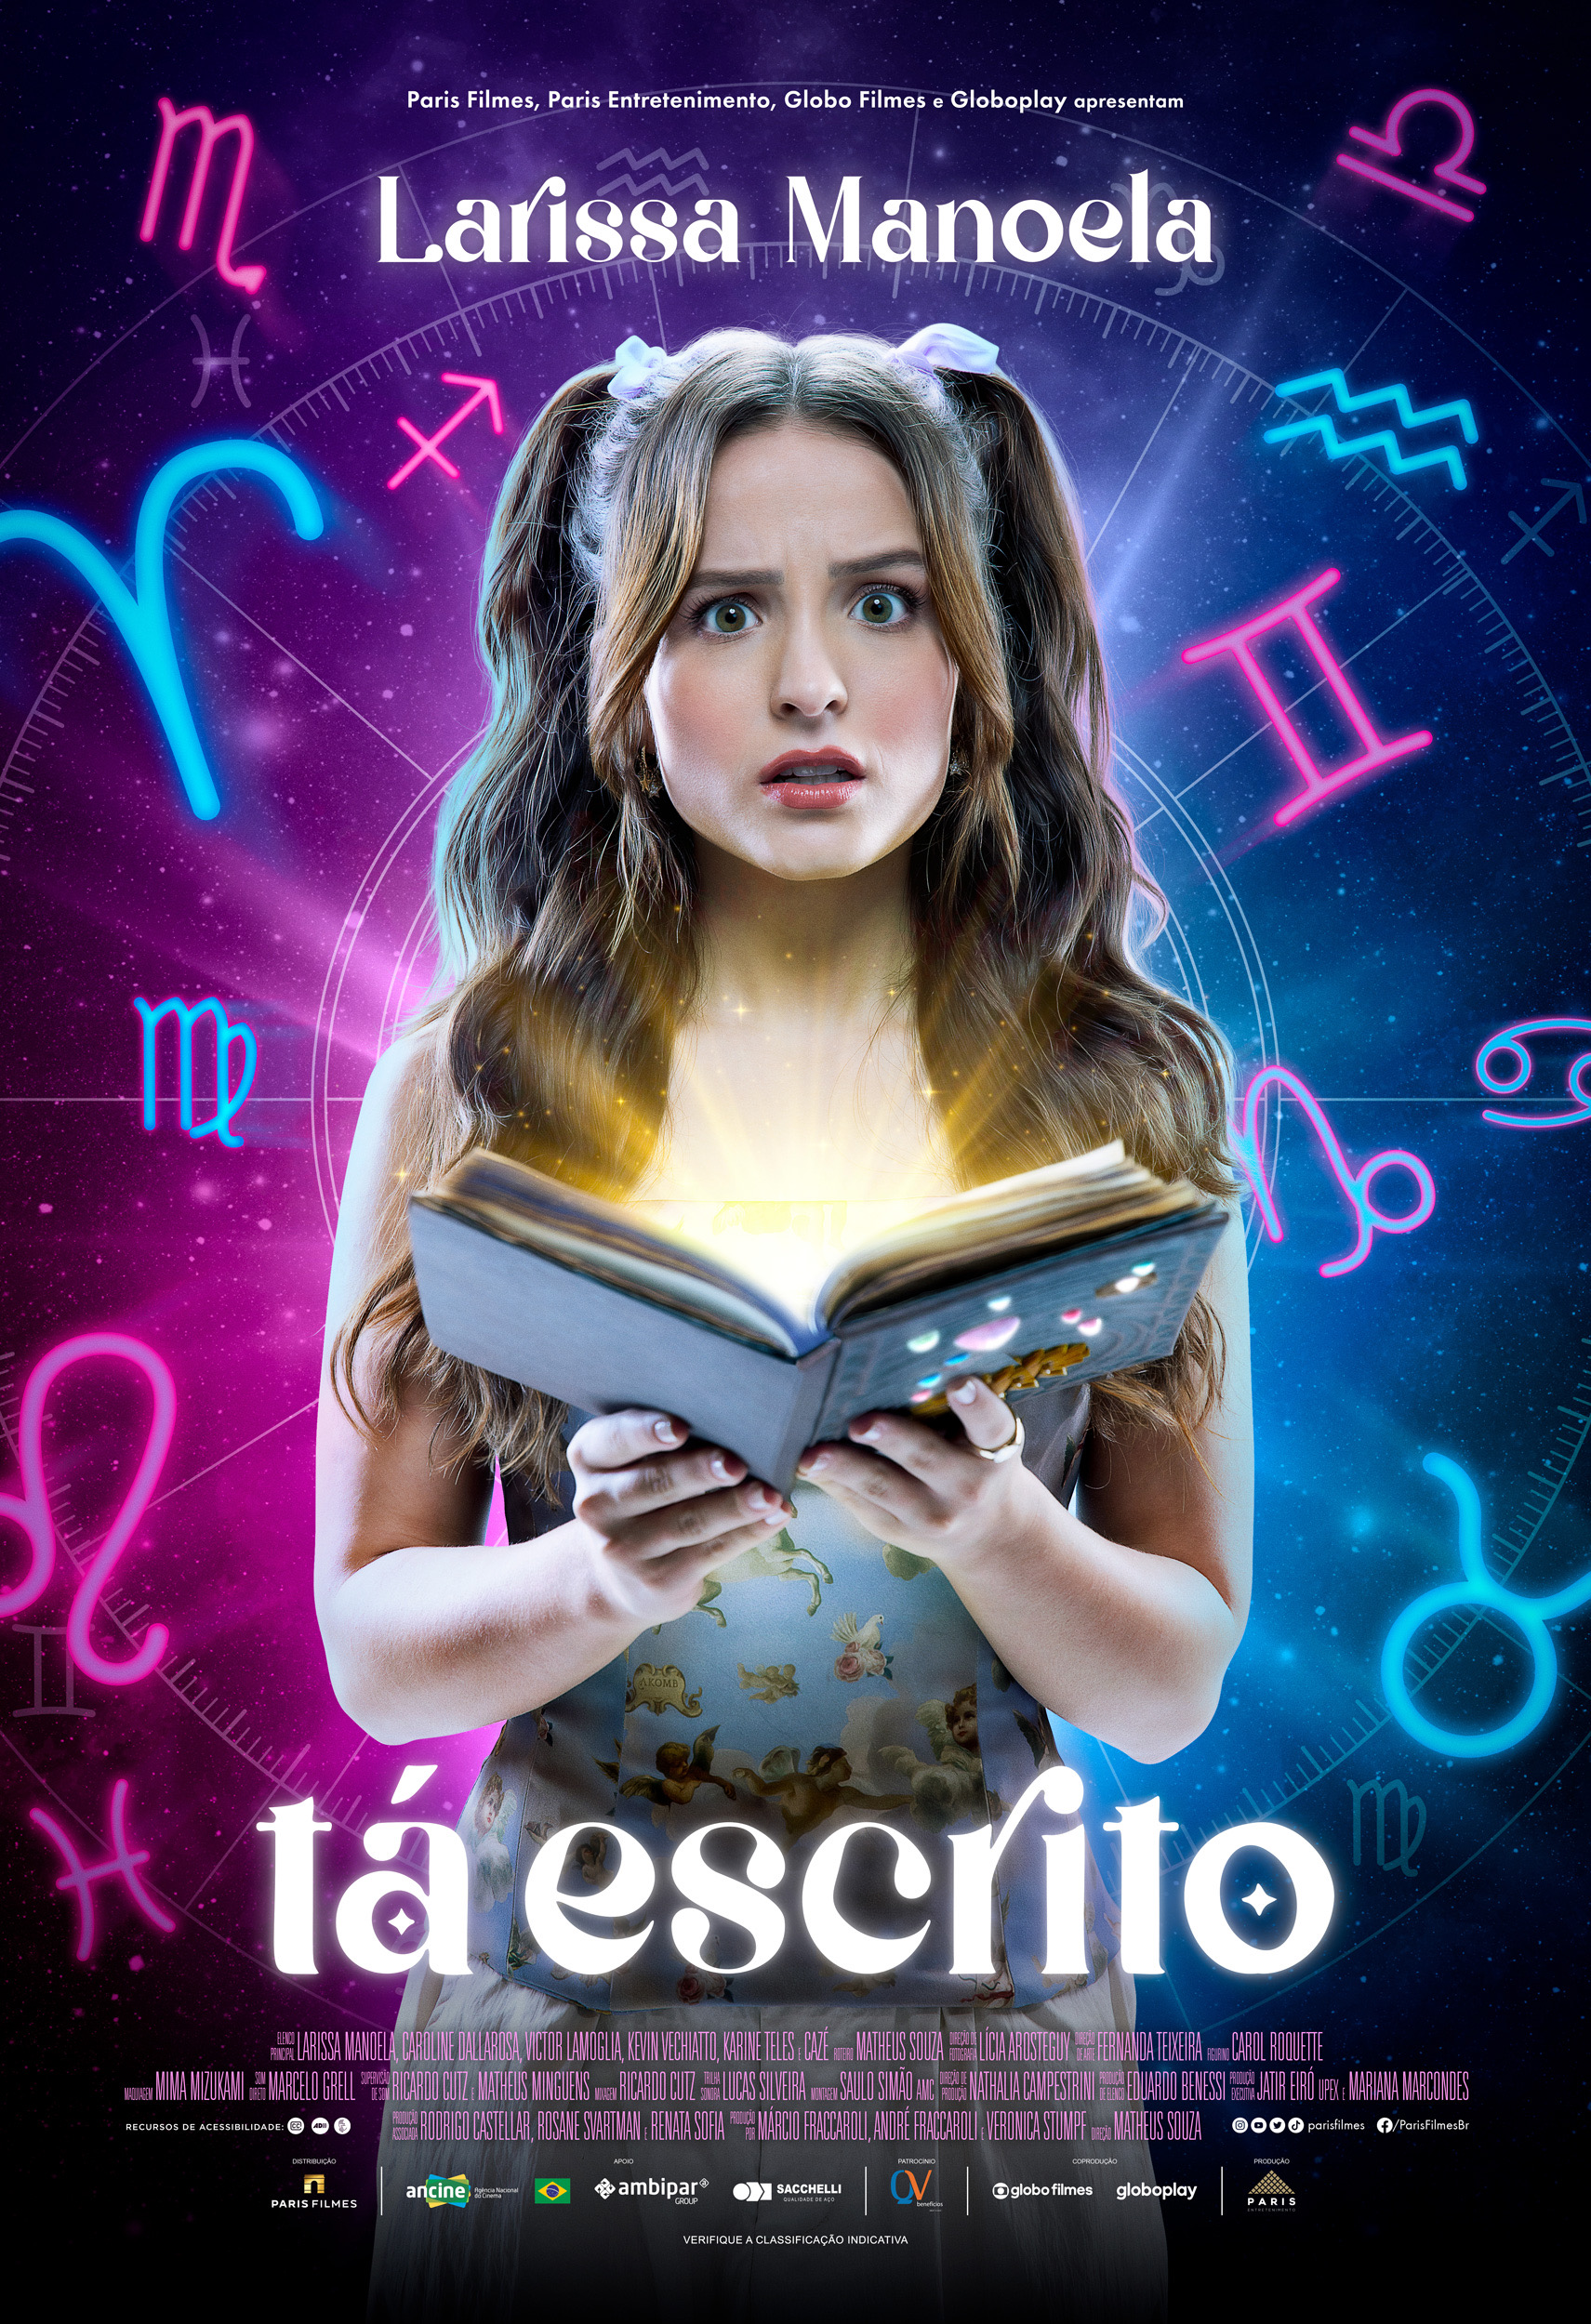 Larissa Manoela em pôster de Tá Escrito; ela está com expressão de surpresa e confusão enquanto segura um livro; símbolos de signos do zodíaco estão ao fundo da imagem nas cores rosa, azul e roxo; o nome do filme aparece em branco na parte central inferior da imagem